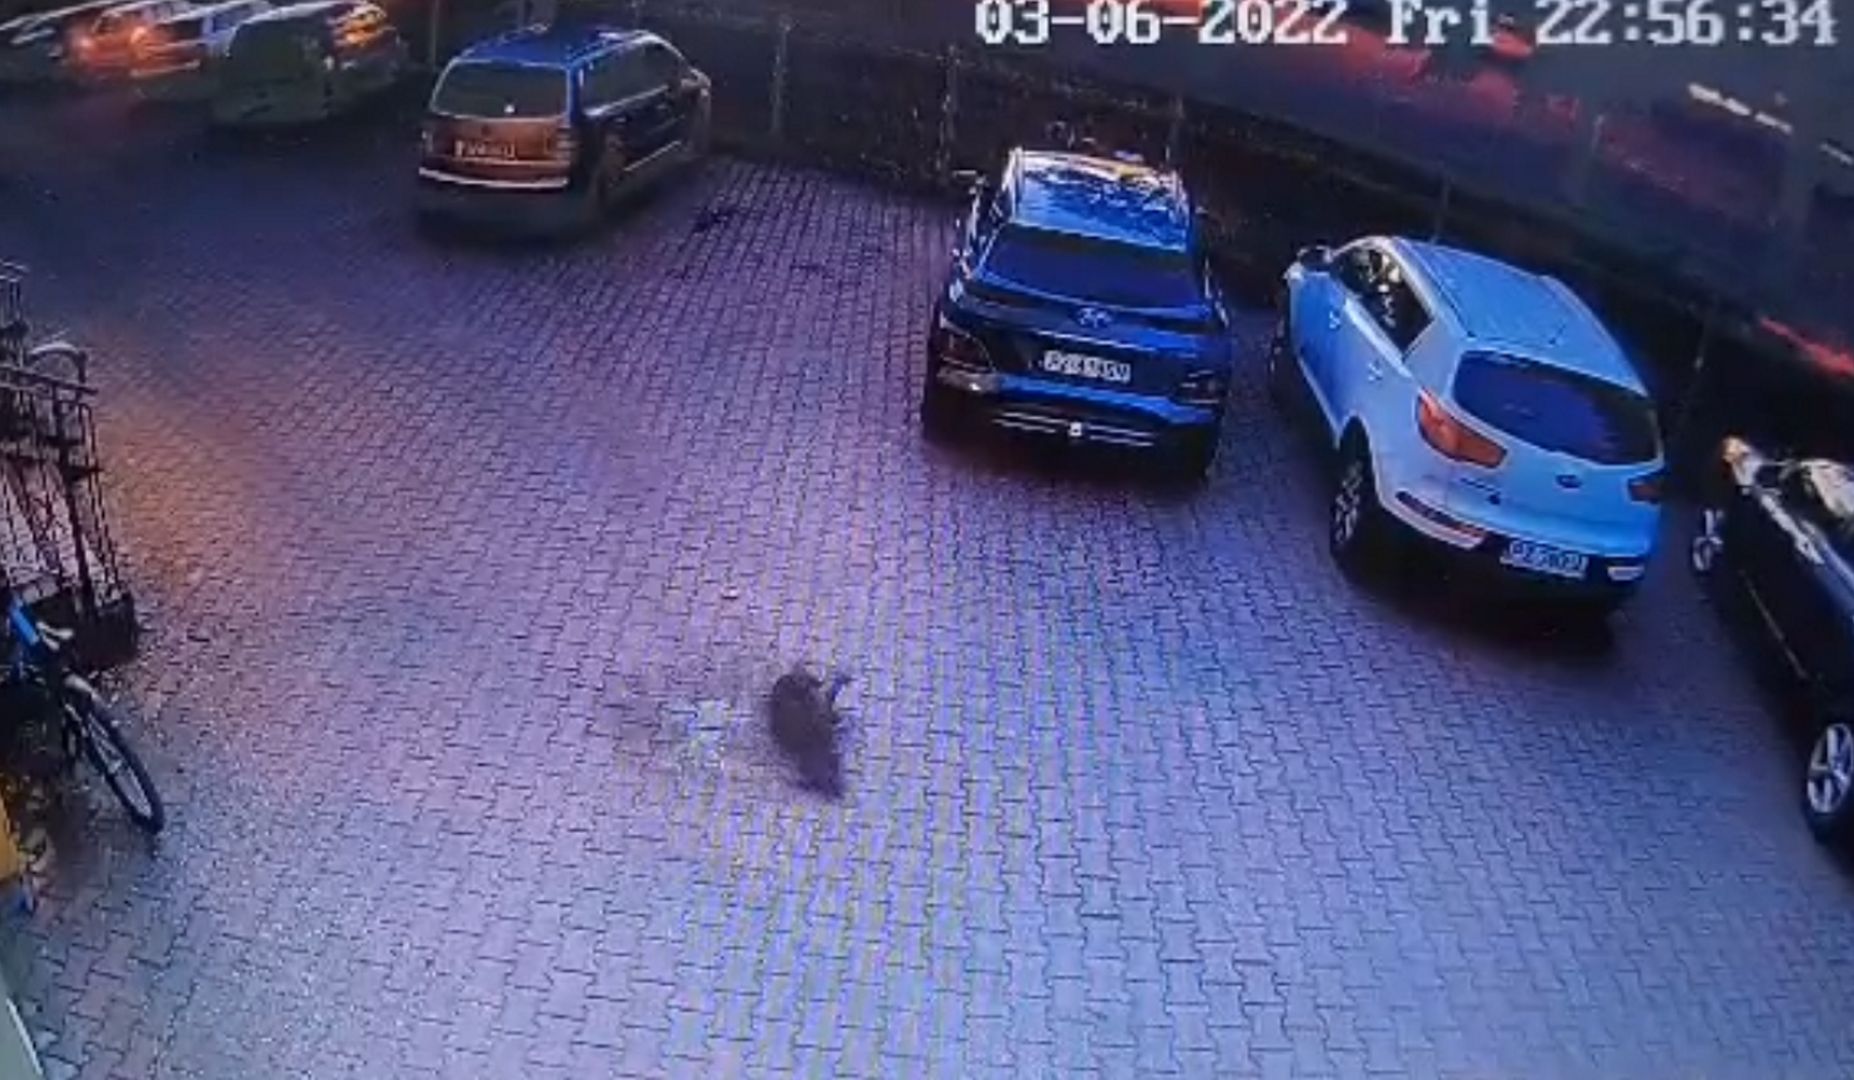 Wyrzucił psa przez okno. Drastyczne nagranie, policja w akcji